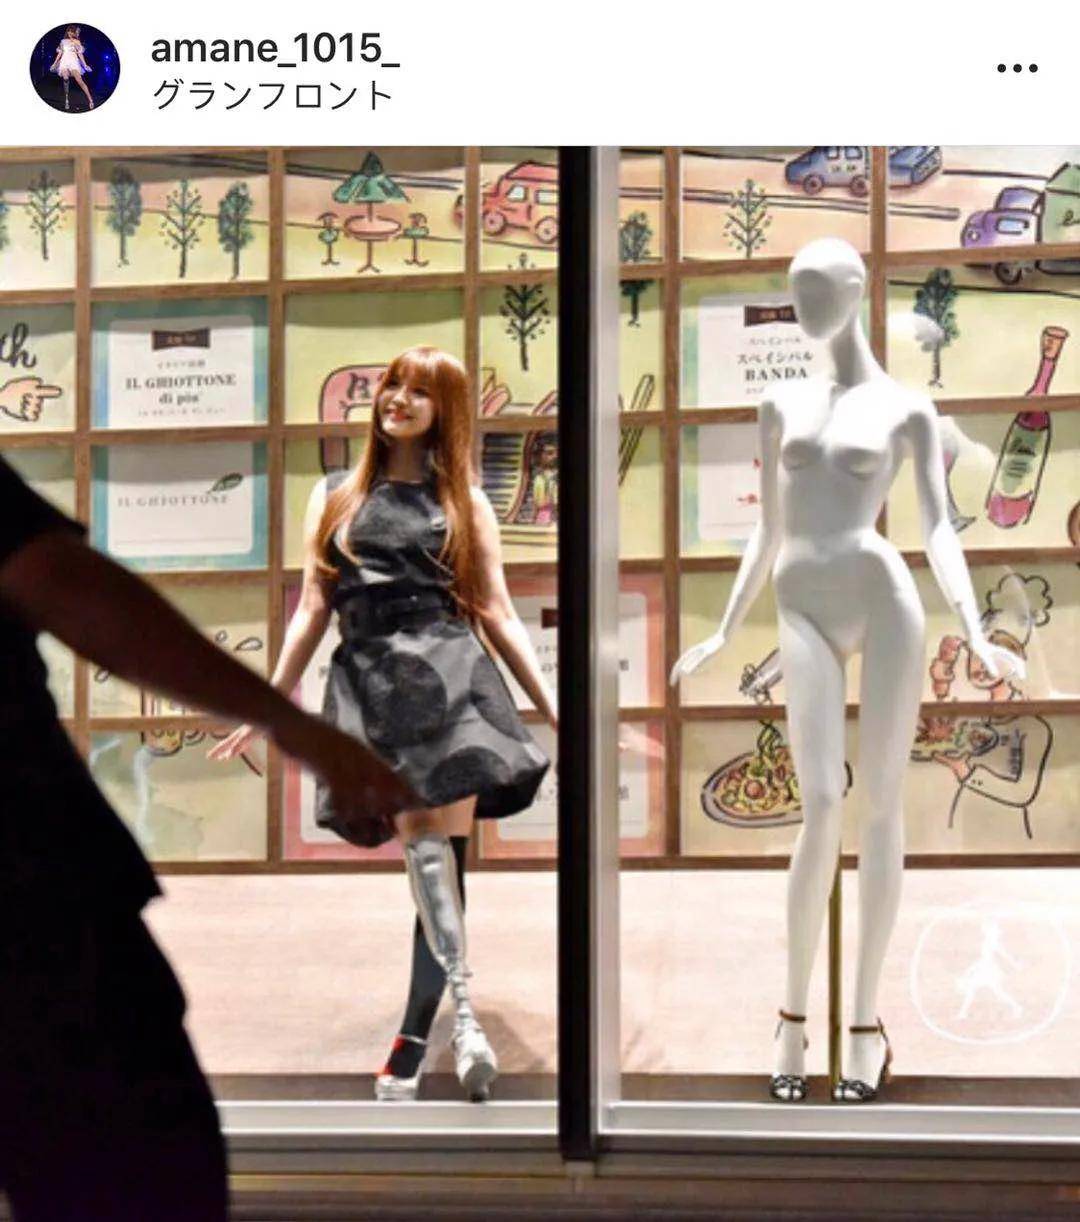 日本18岁美少女不幸截肢模特梦想的她如今戴上义肢重返舞台无数人泪崩